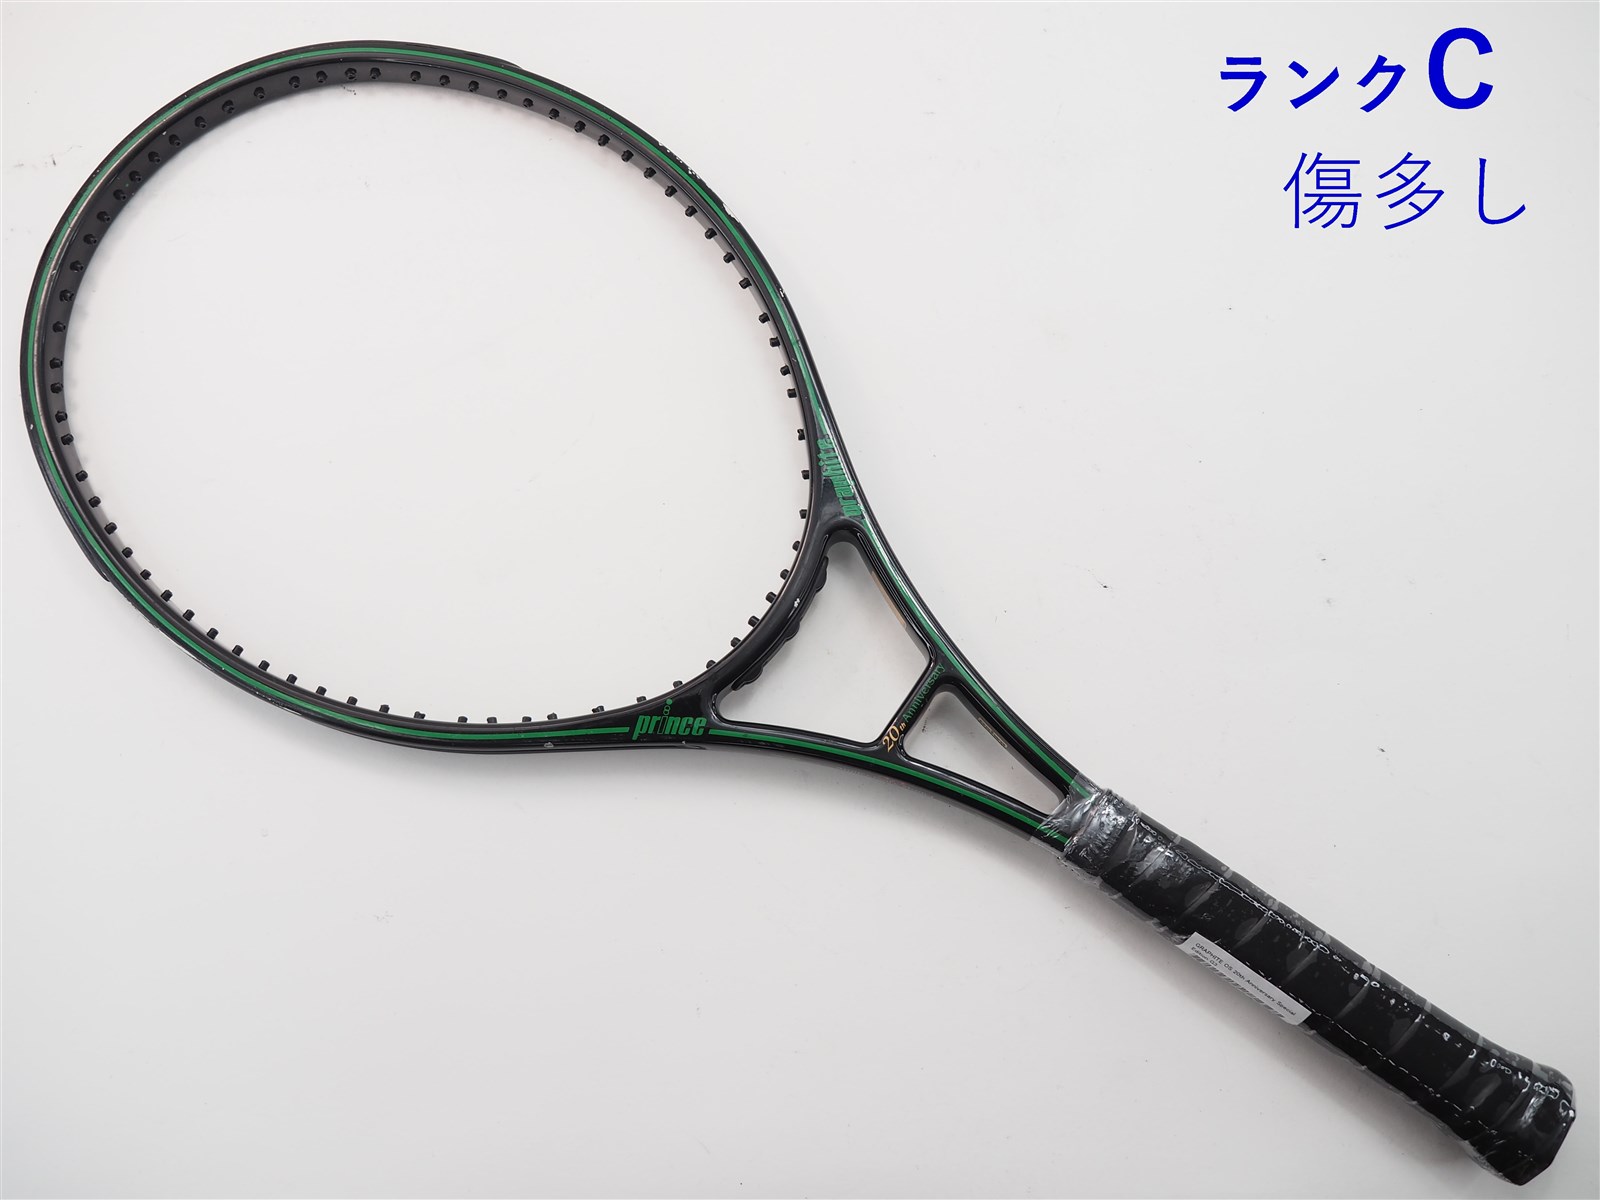 プリンス テニスラケット ファントム グラファイト100 7TJ108 ケース付 